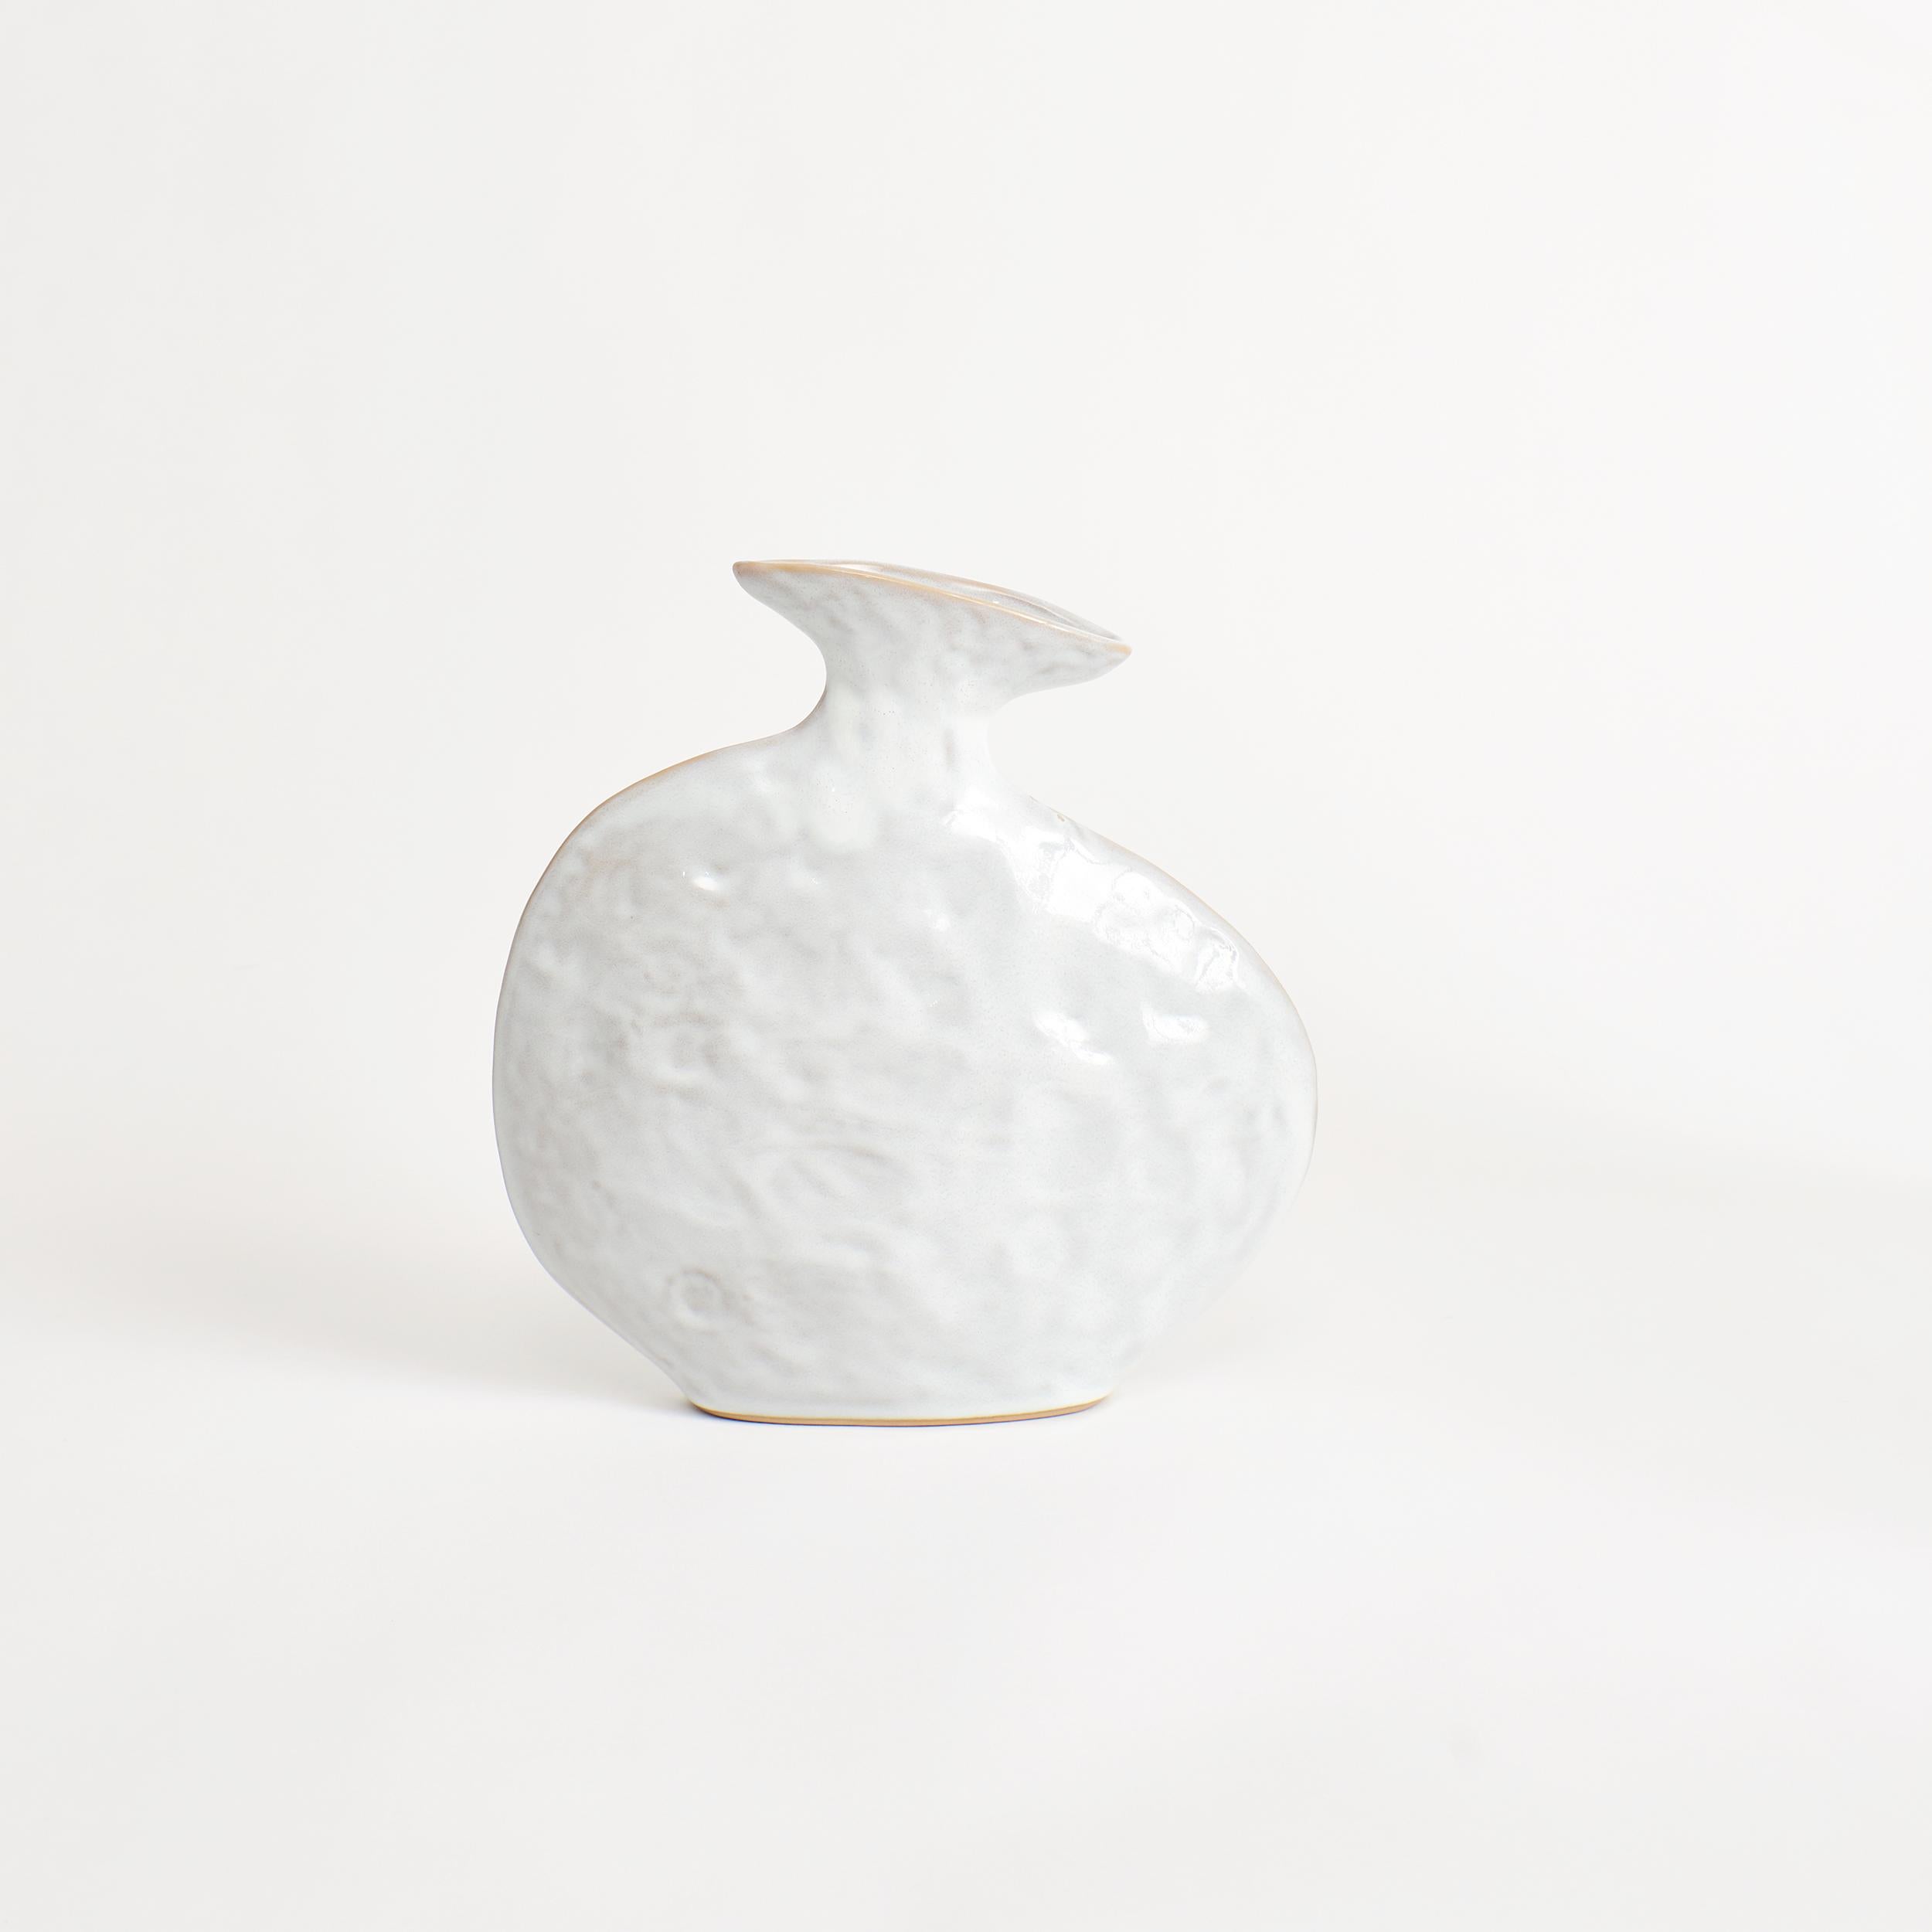 Flache Vase in Shiny White.
Entworfen von Project 213A im Jahr 2021.
Handgefertigtes Steingut.


Die Schöpfung verlangt nach Zerstörung, sie nimmt das Alte und Typische, um das Neue und Besondere zu schaffen. Die flache Vase verkörpert durch ihre